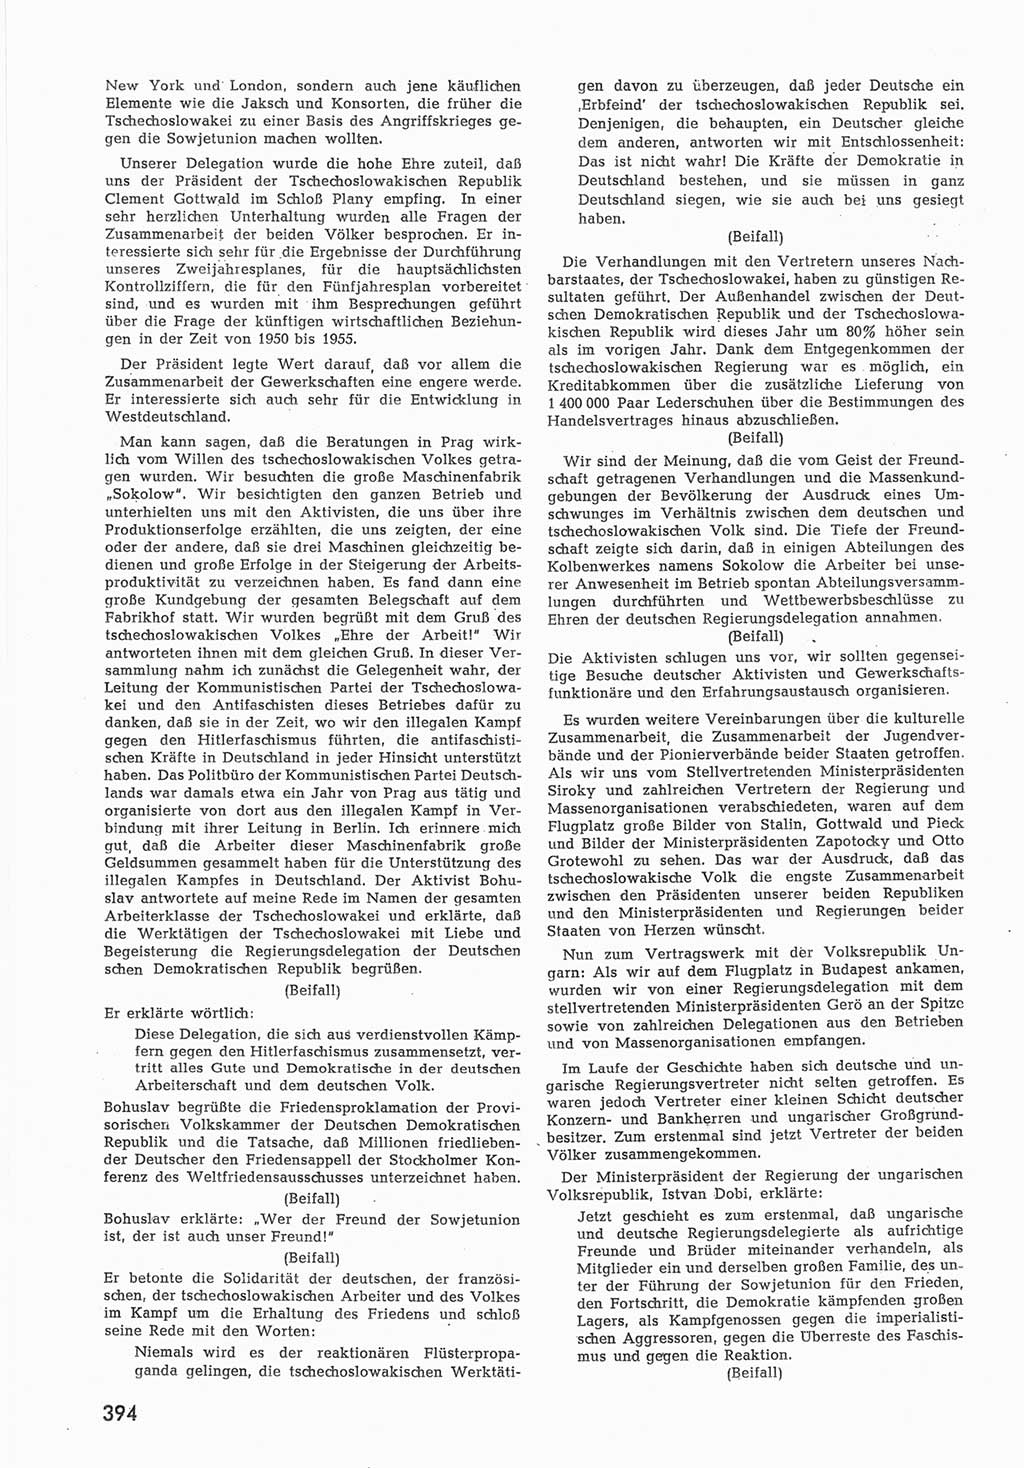 Provisorische Volkskammer (VK) der Deutschen Demokratischen Republik (DDR) 1949-1950, Dokument 412 (Prov. VK DDR 1949-1950, Dok. 412)